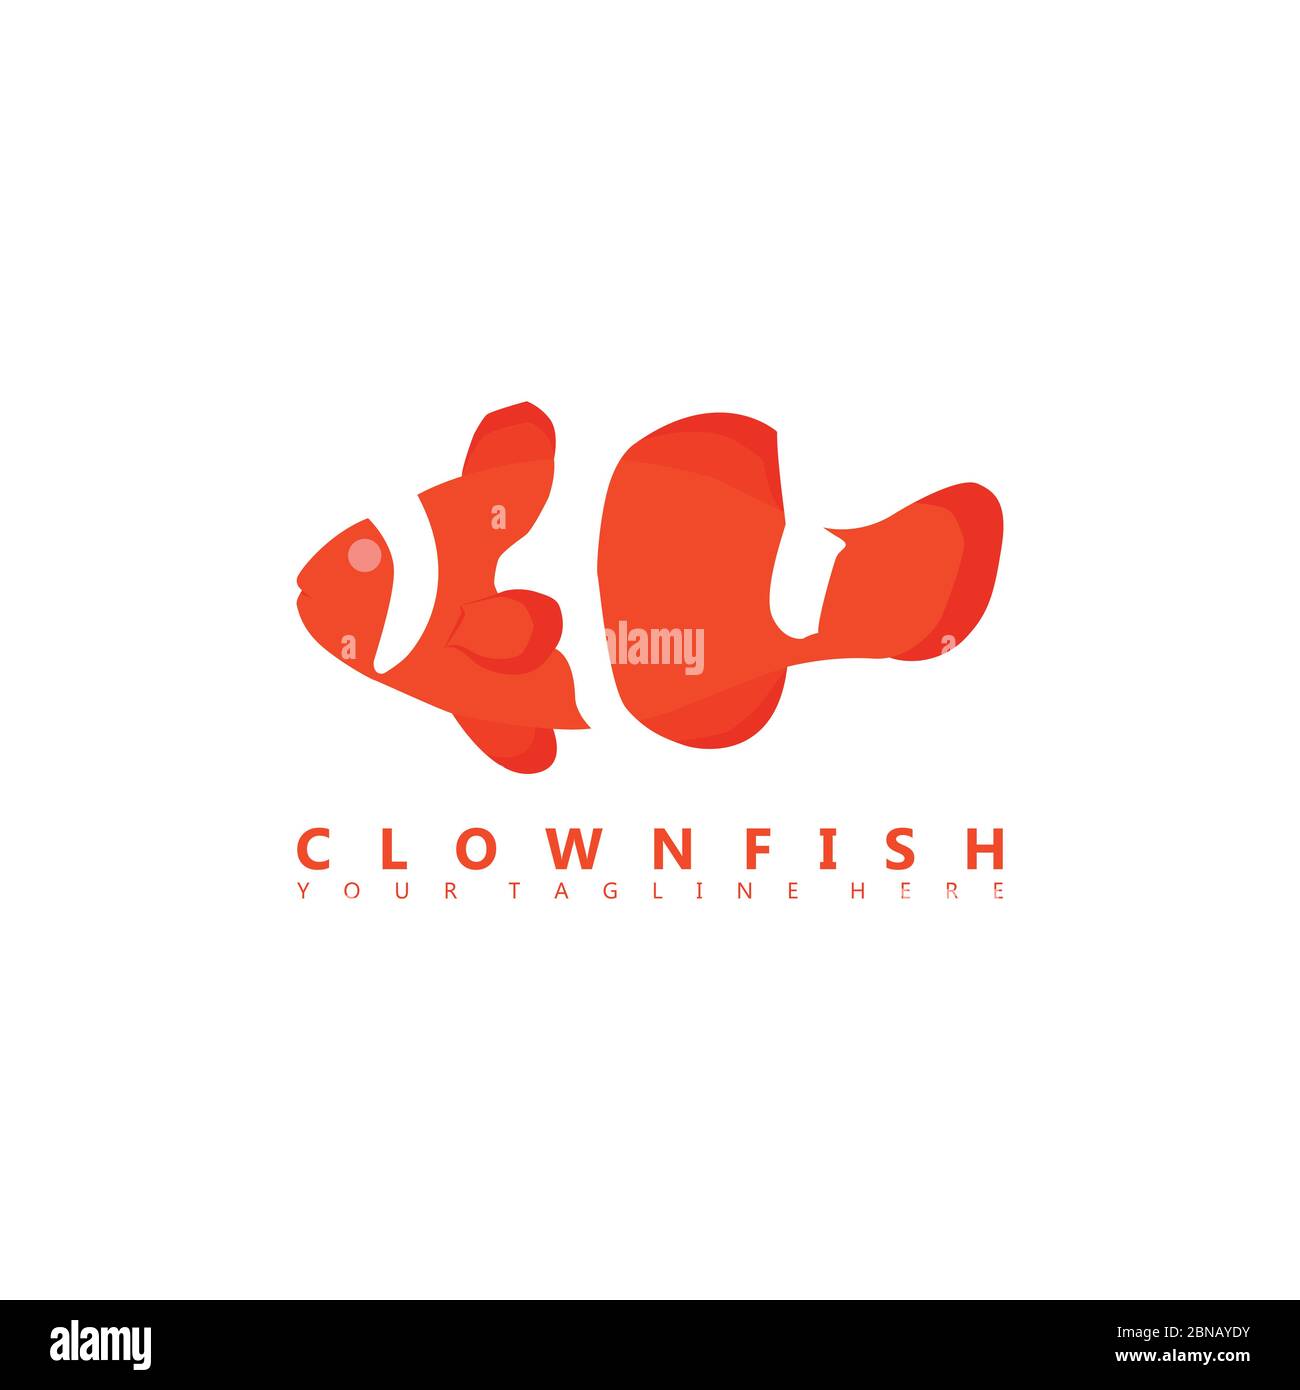 Questa è un'immagine del logo di clownfish che utilizza uno stile di spazio negativo. Questo logo è adatto alle aziende del settore dell'allevamento ornamentale. Illustrazione Vettoriale